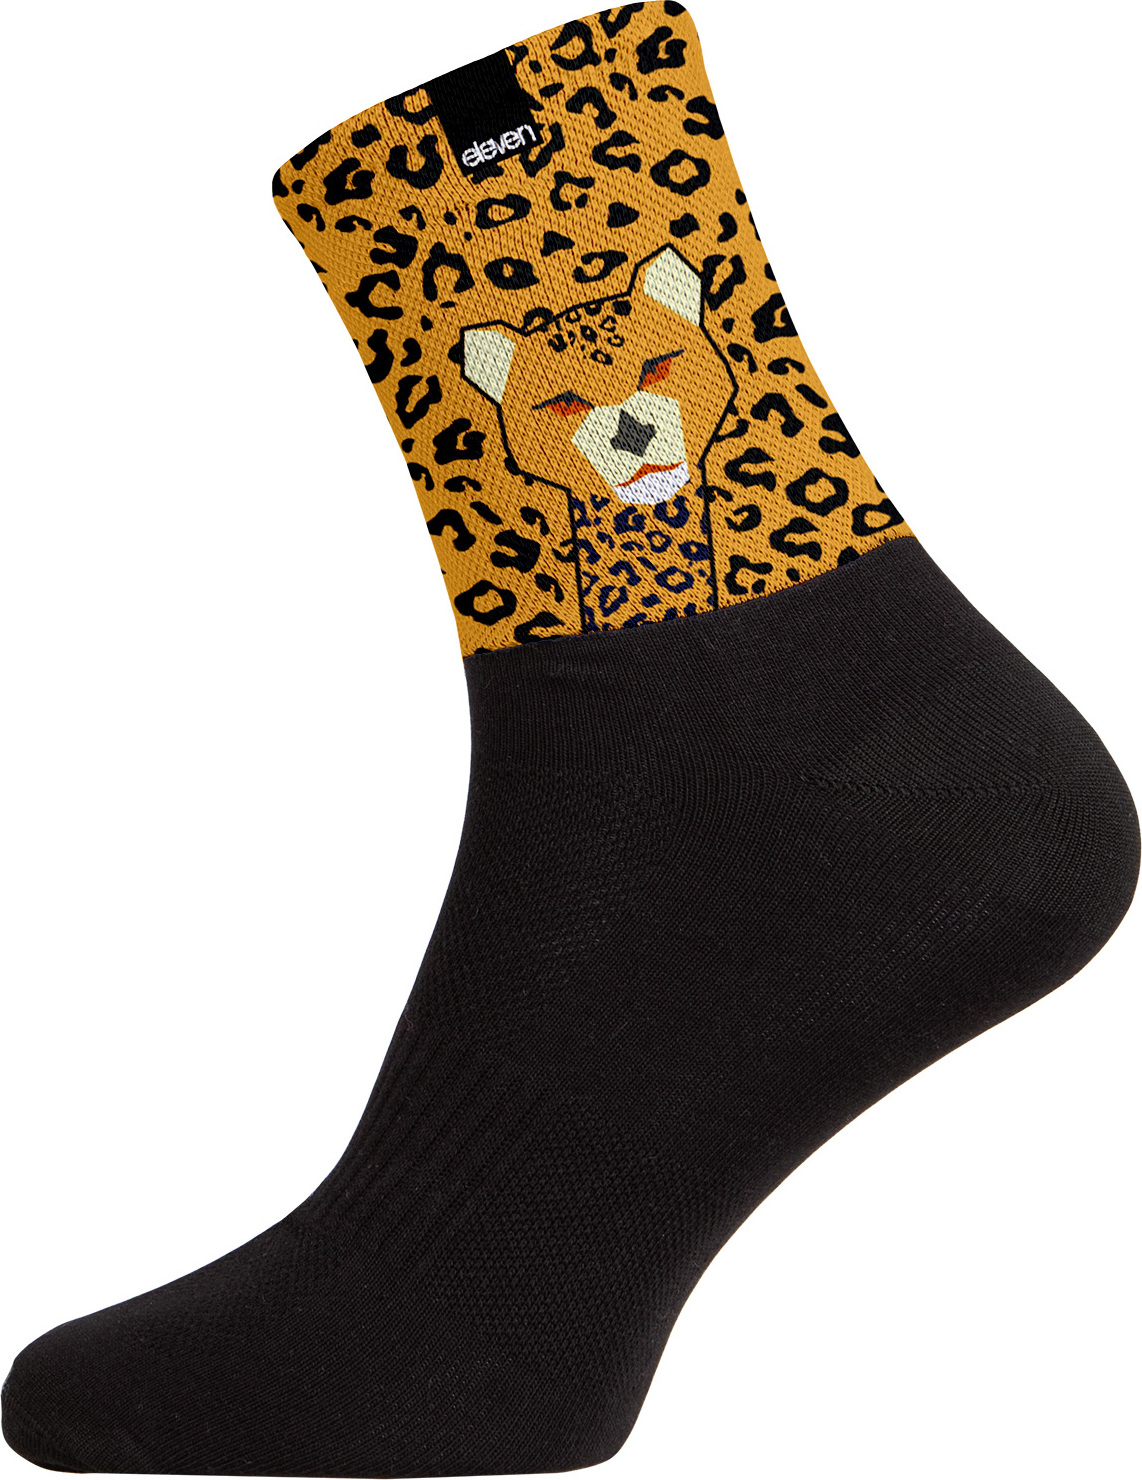 Ponožky ELEVEN Cuba Cheetah černé Velikost: L (42-44)